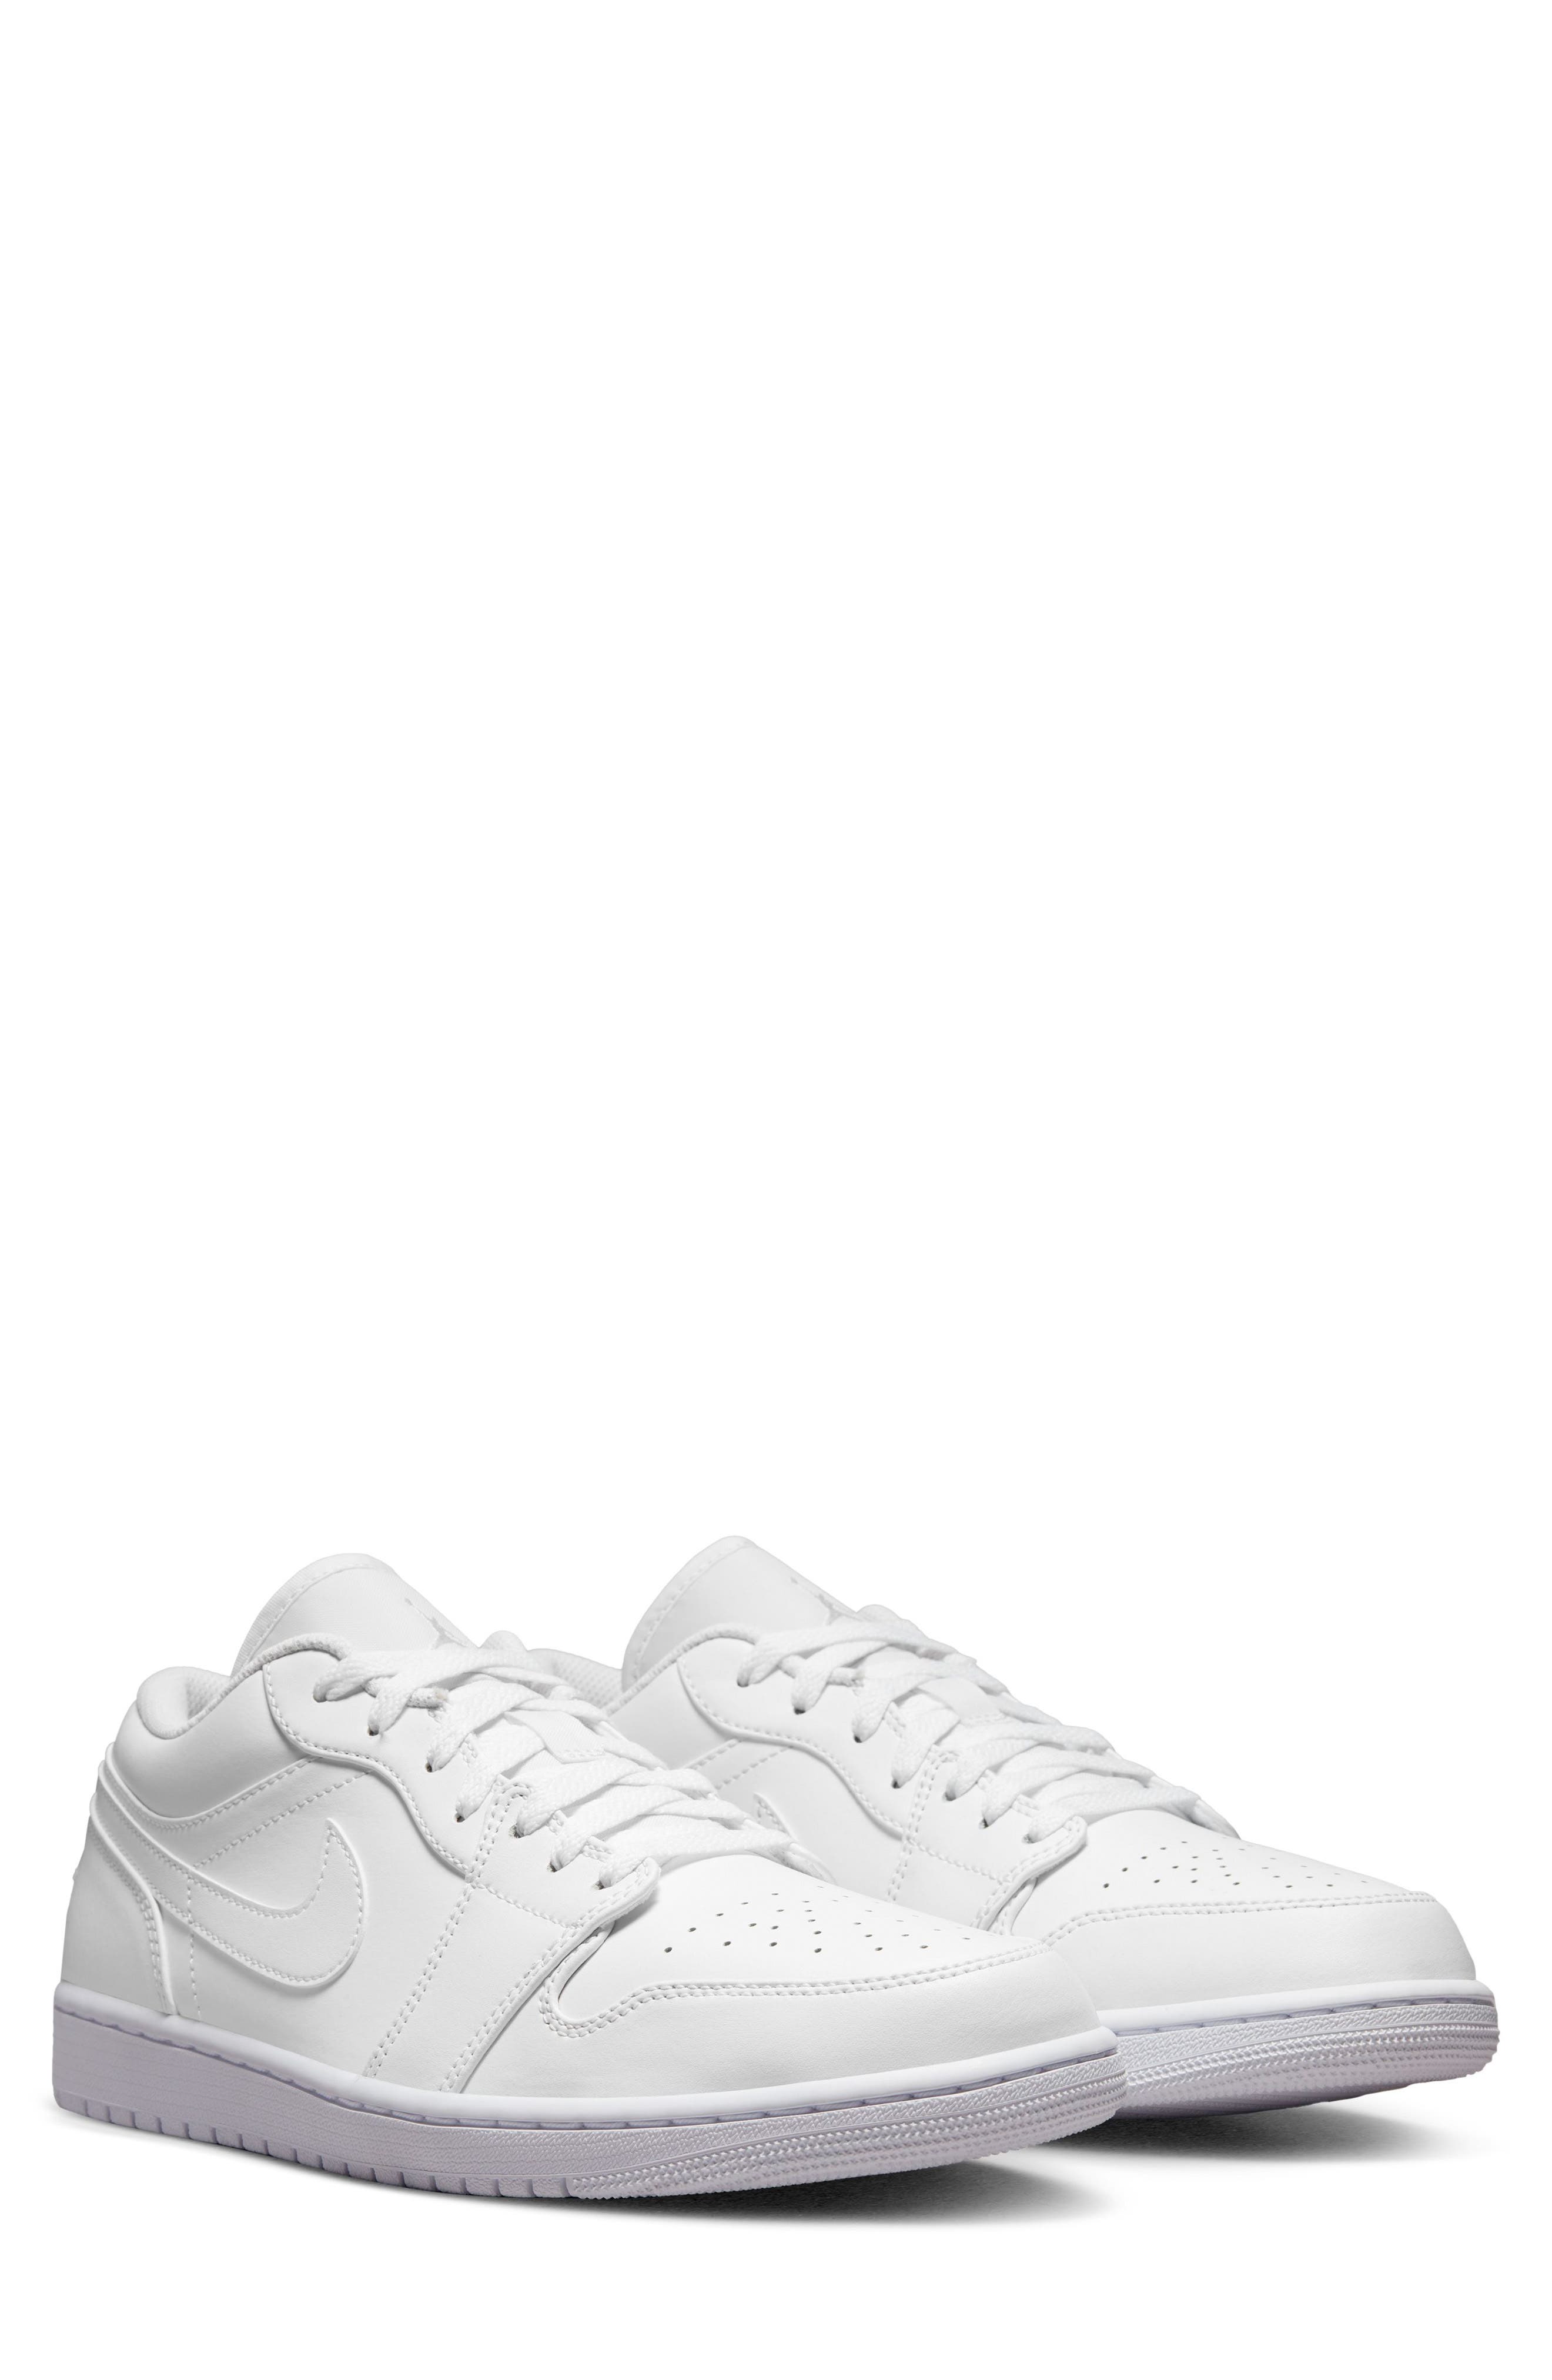 all white jordan running shoes